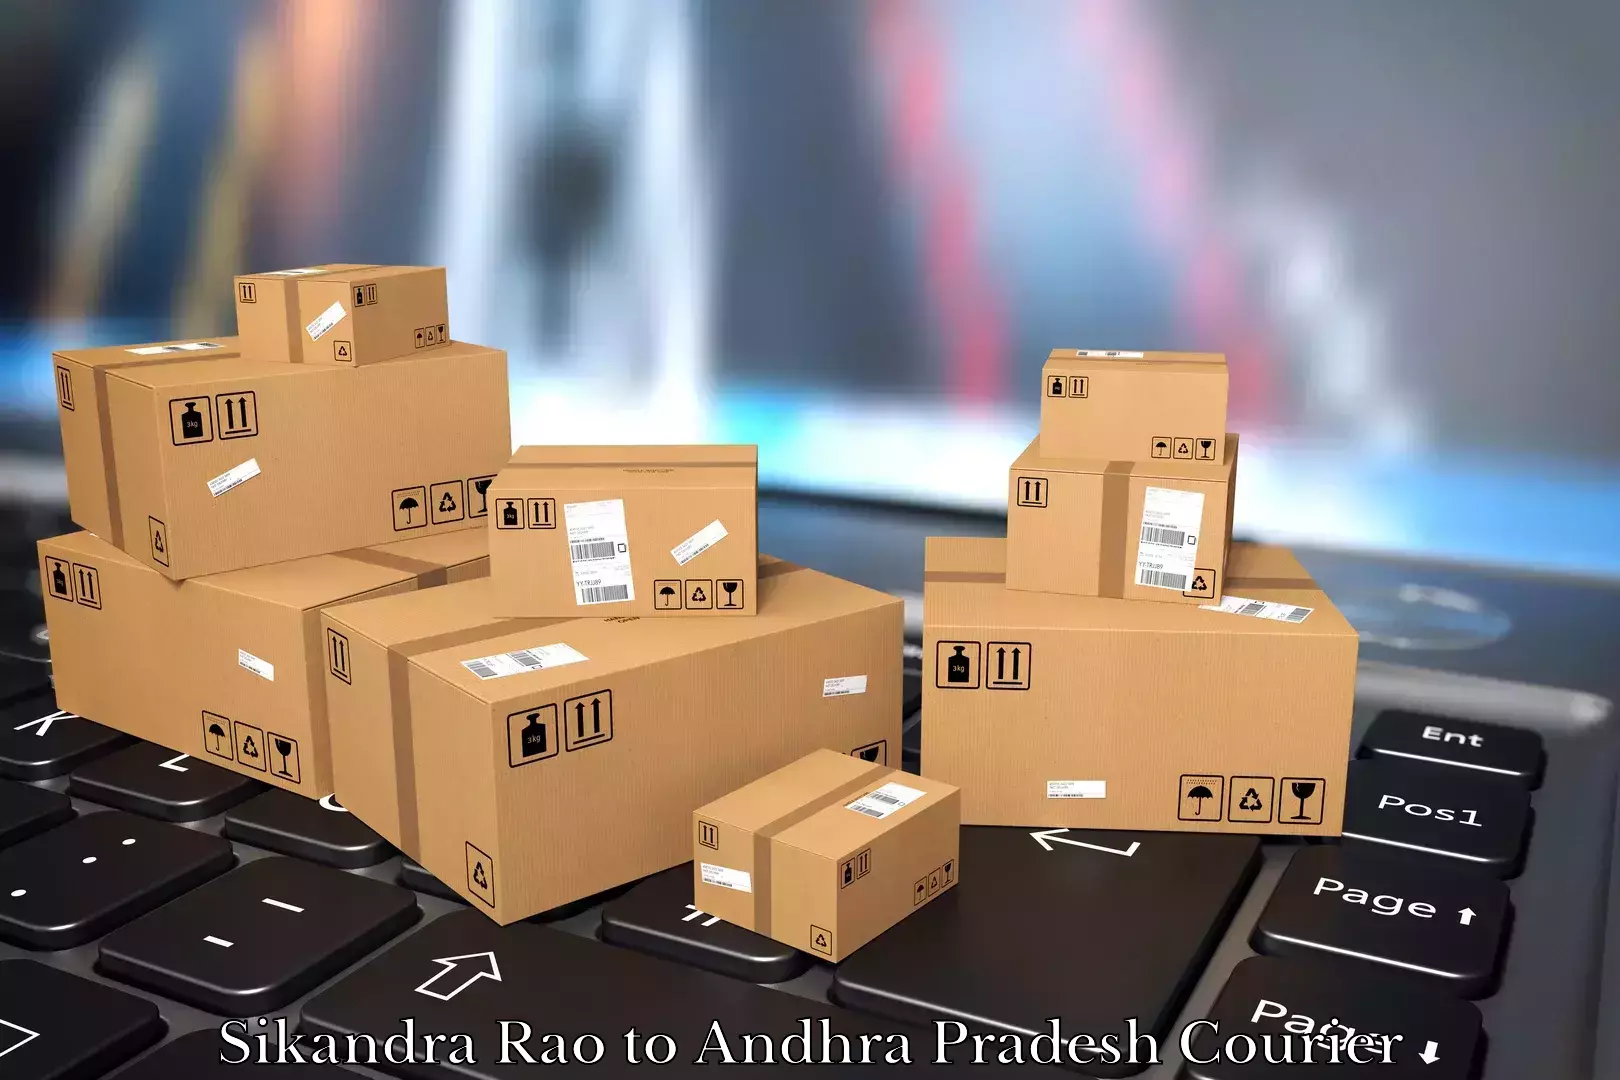 Professional moving company Sikandra Rao to Sri City